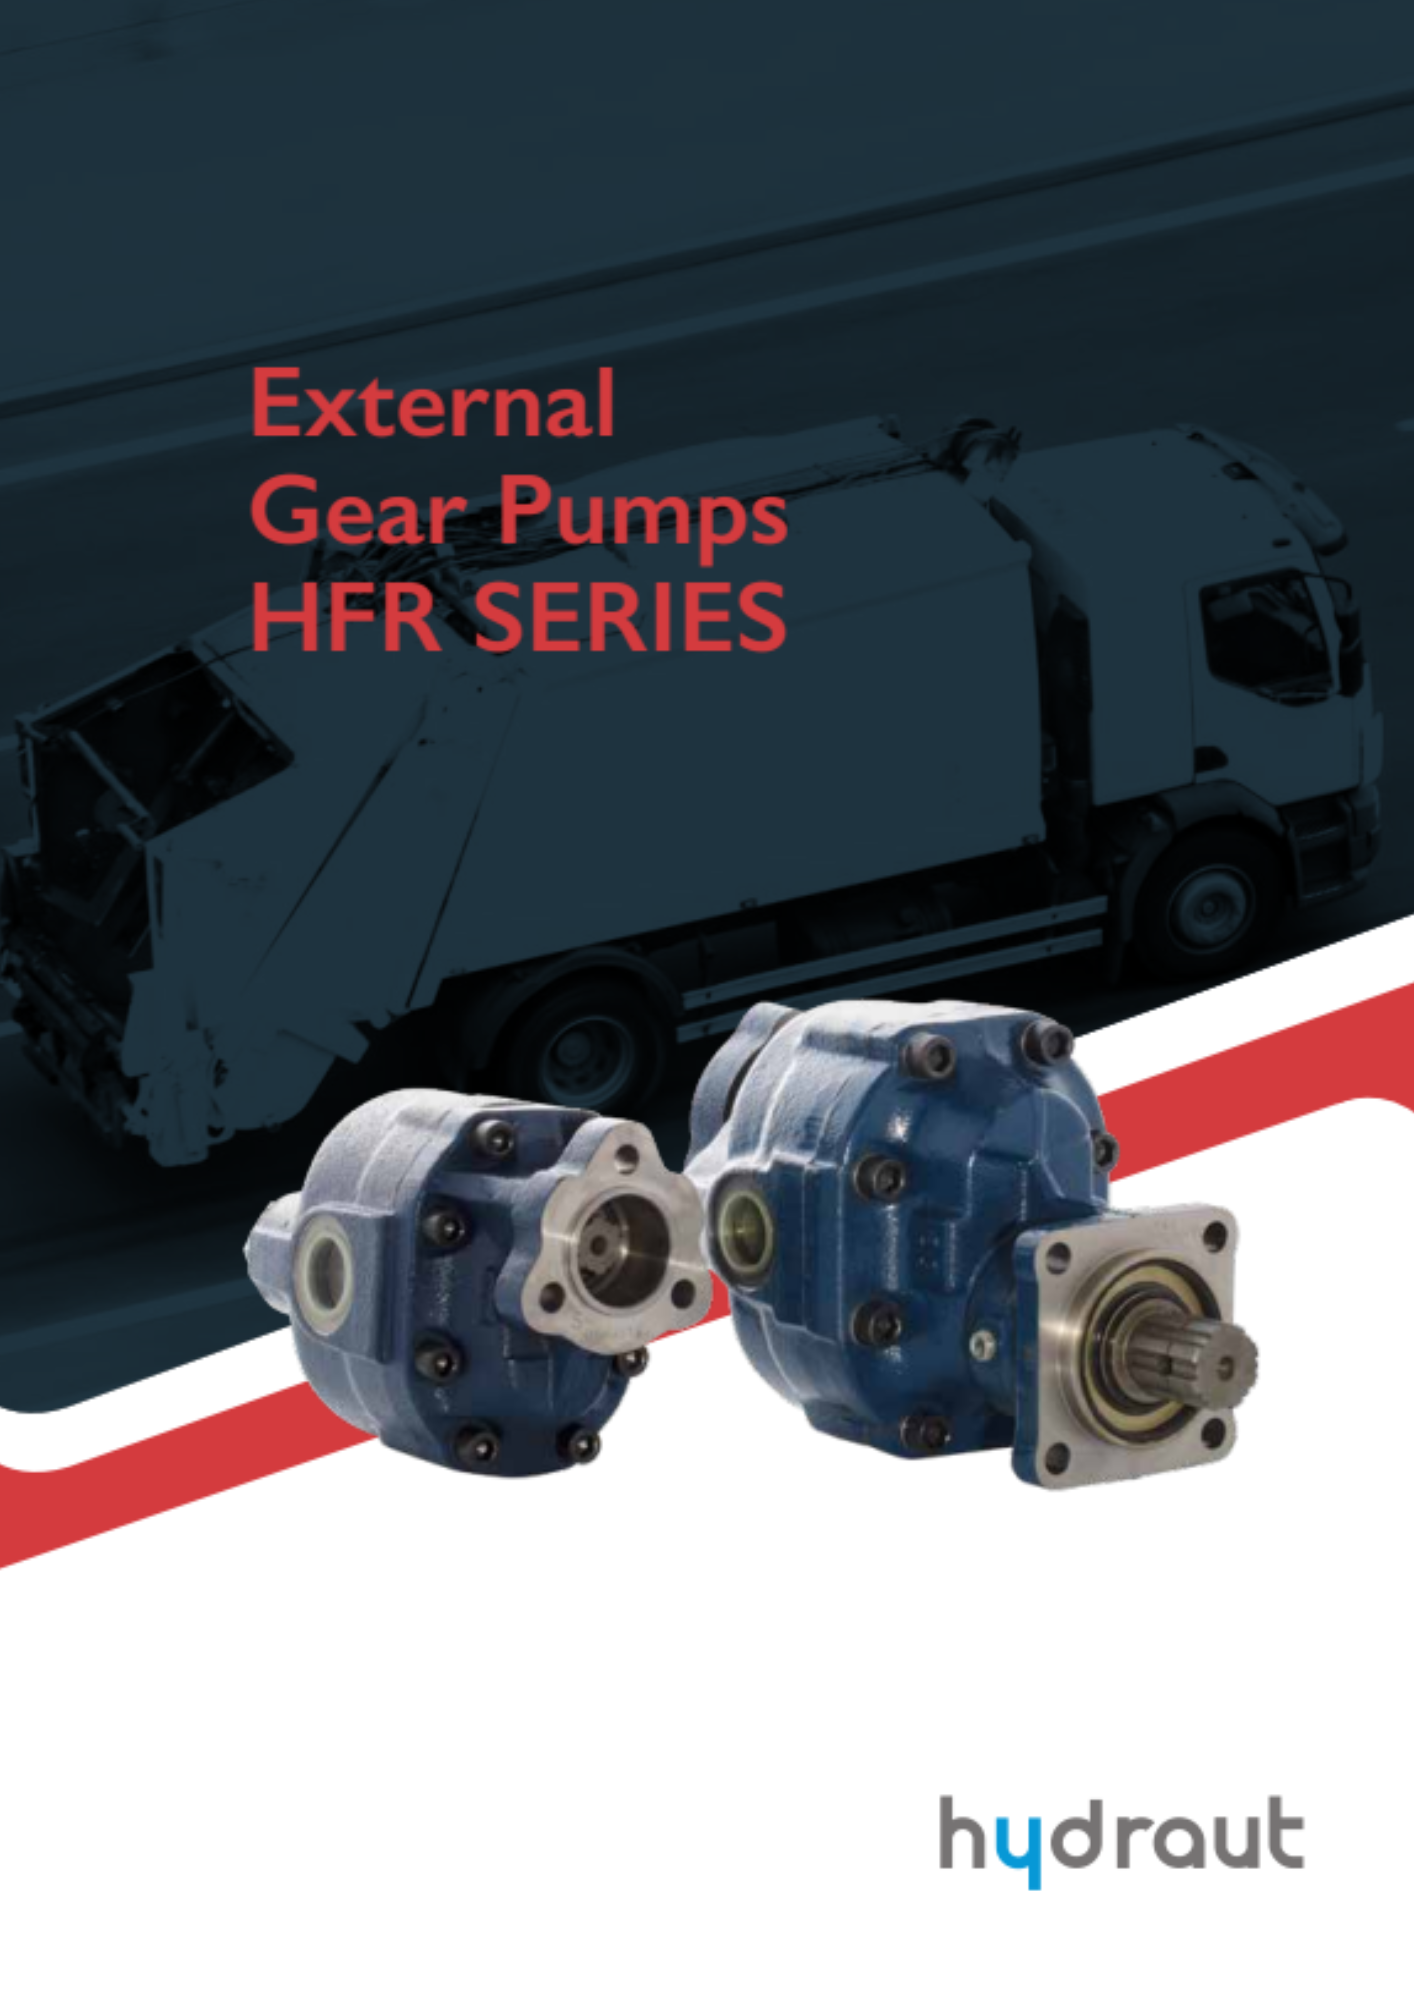 Hydraut: pompes à engrenages externes HFR